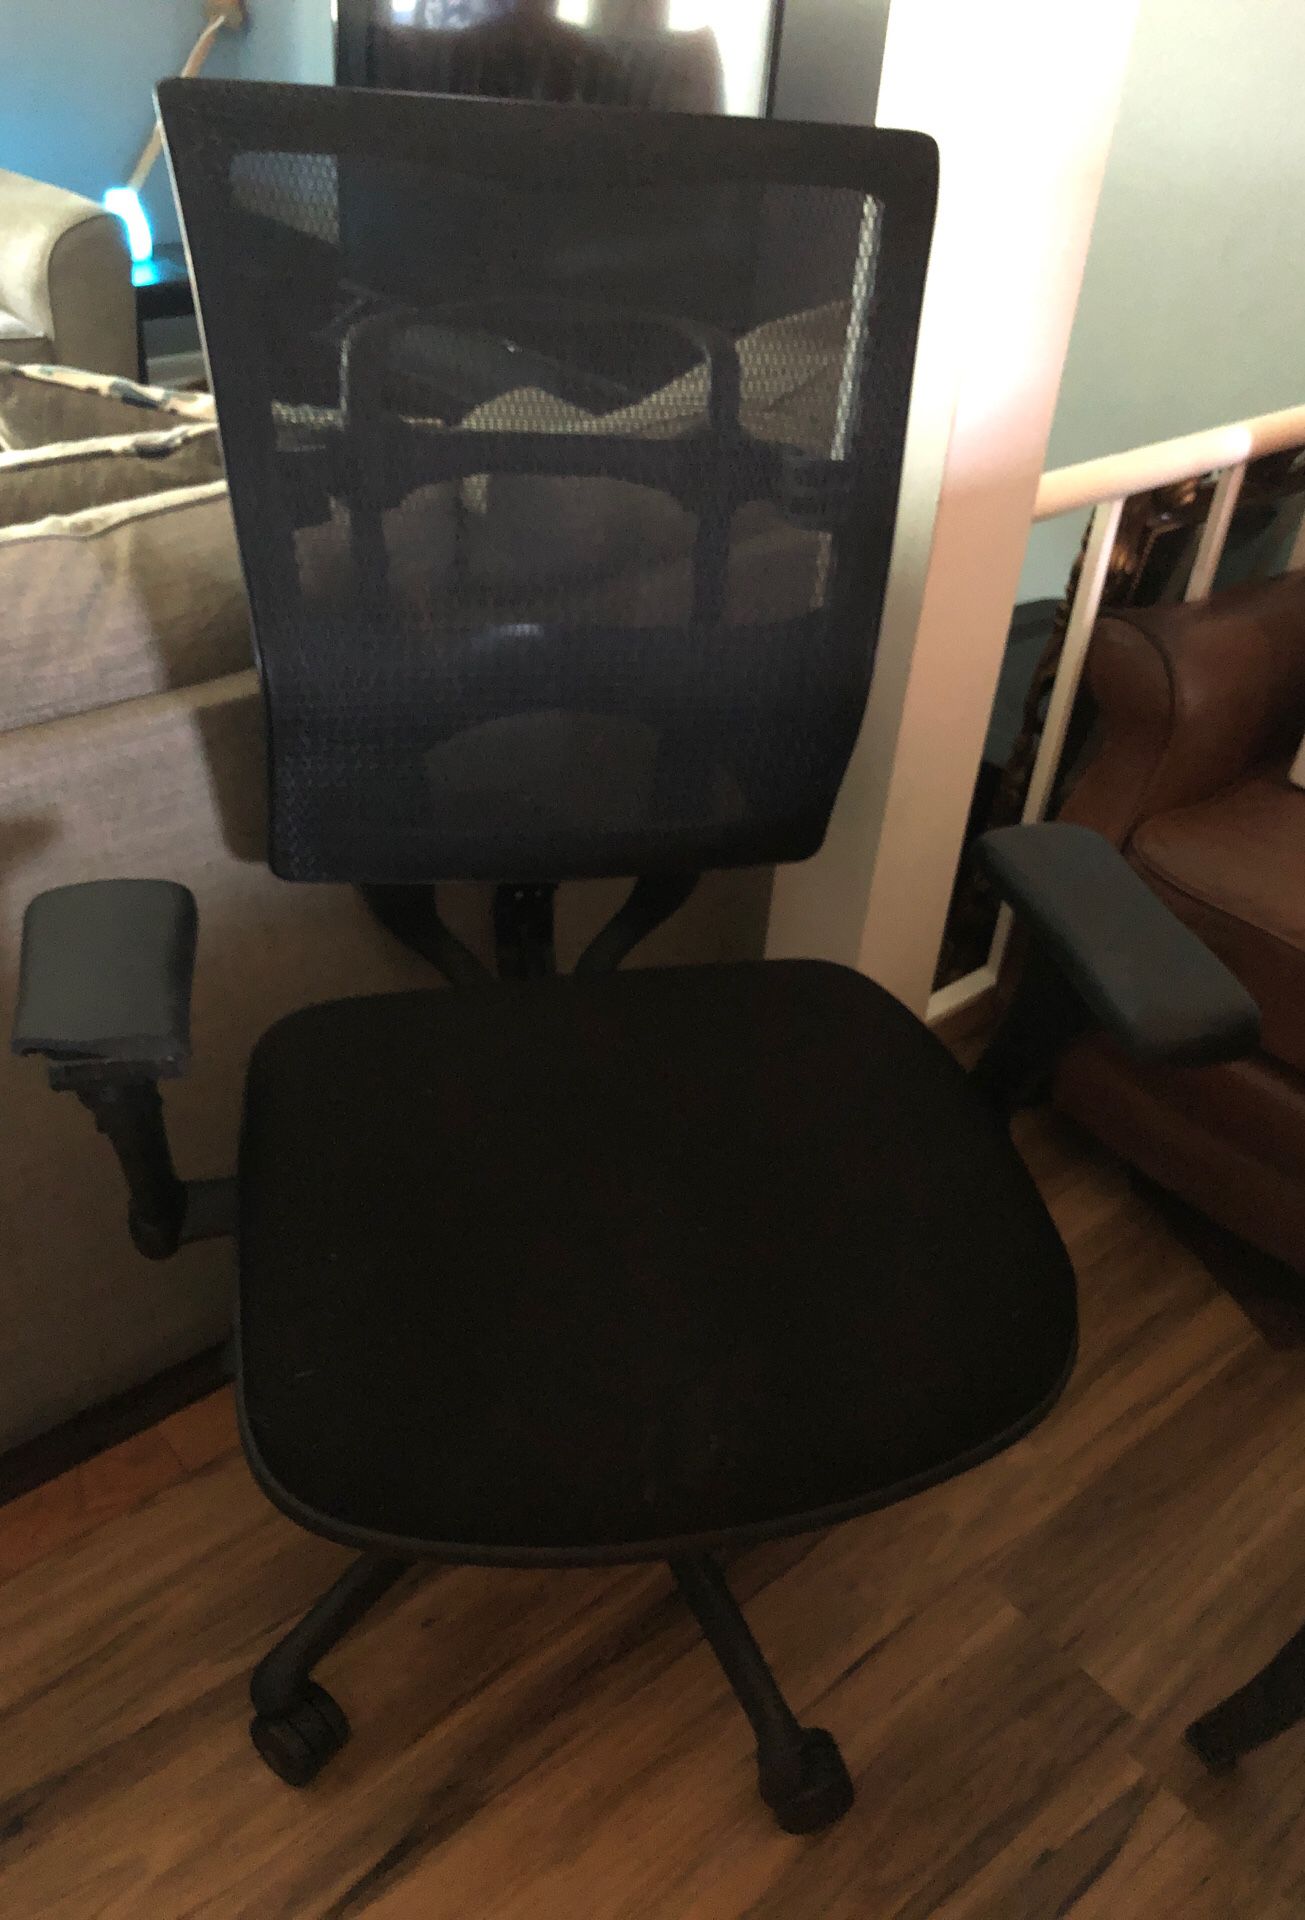 Nice computer chair